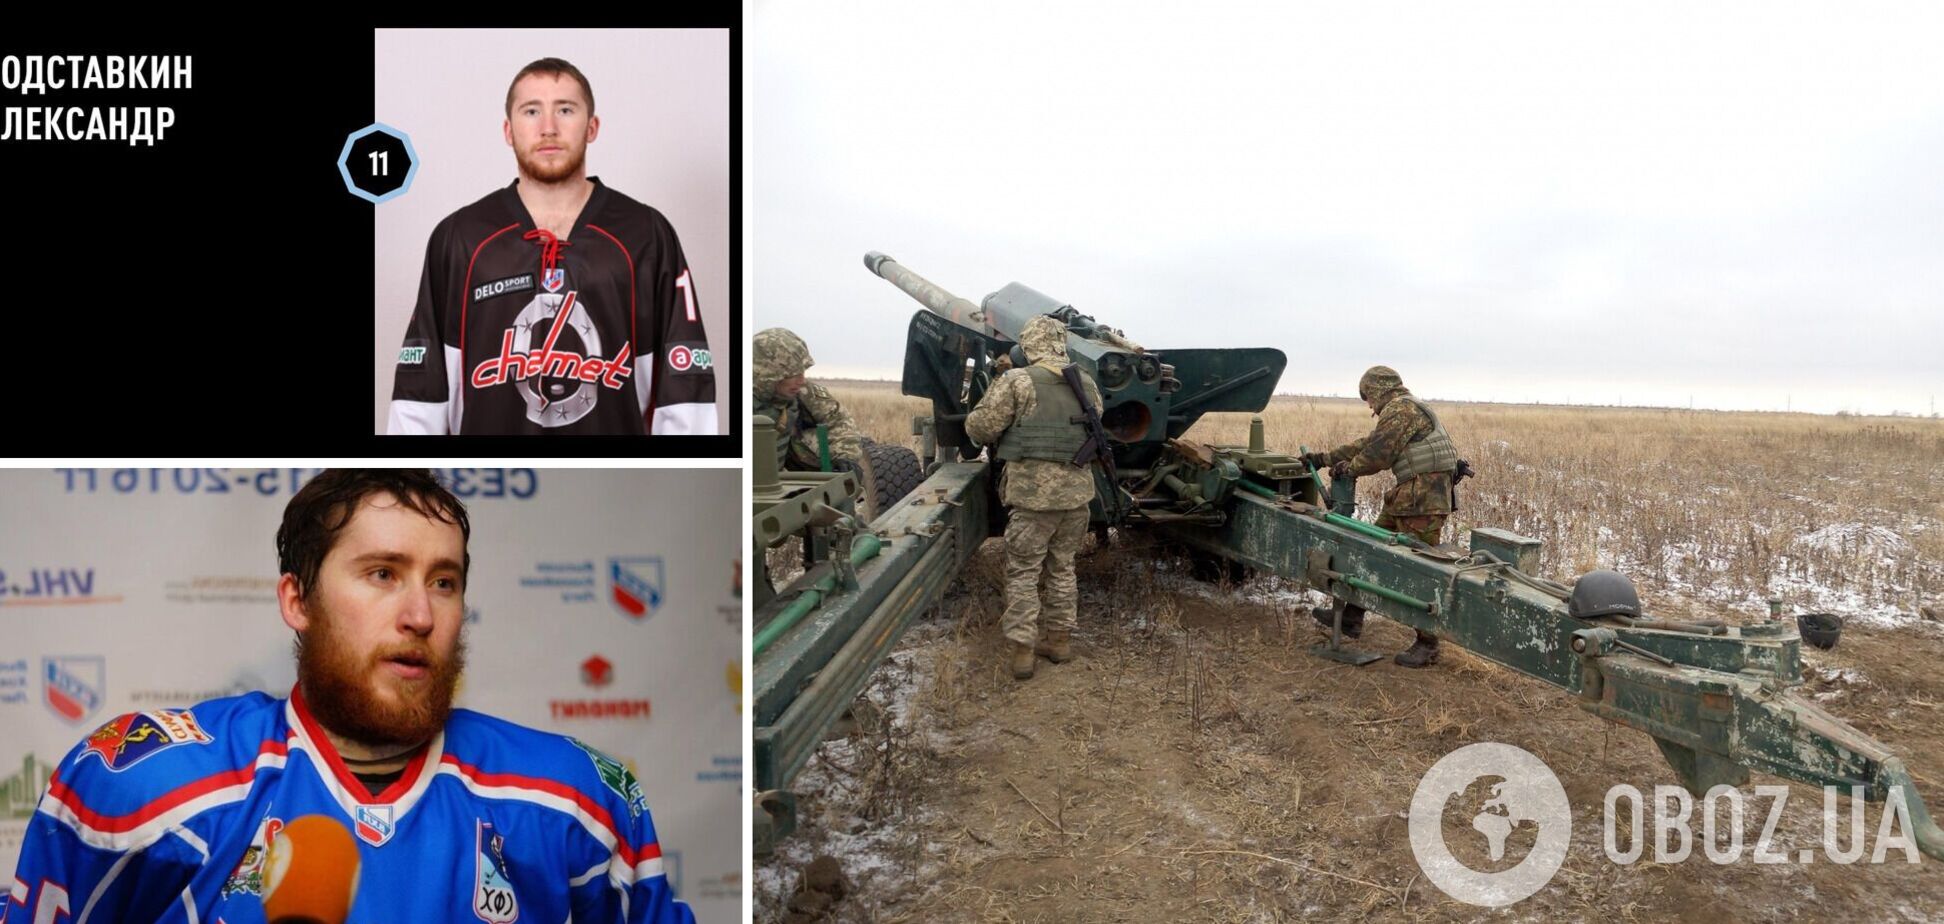 Вице-чемпион России по хоккею отправился убивать украинцев и был ликвидирован ВСУ